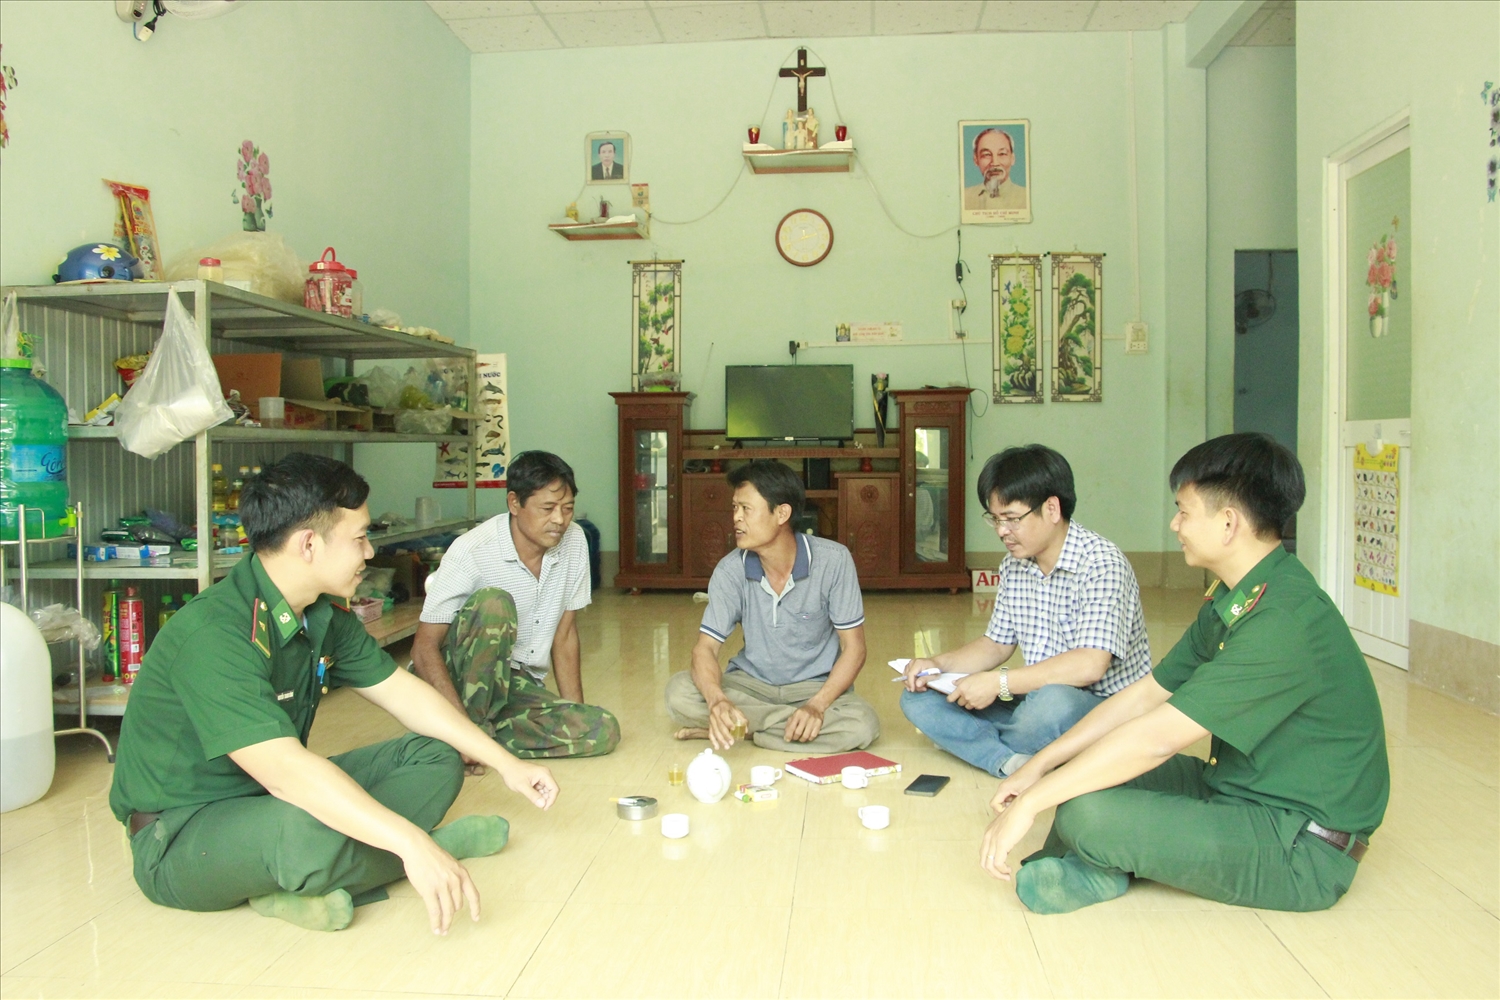 Lãnh đạo Đồn biên phòng Bù Đốp thăm các gia đình tại điểm dân cư ấp Phước Tiến, xã Hưng Phước, huyện Bù Đốp 